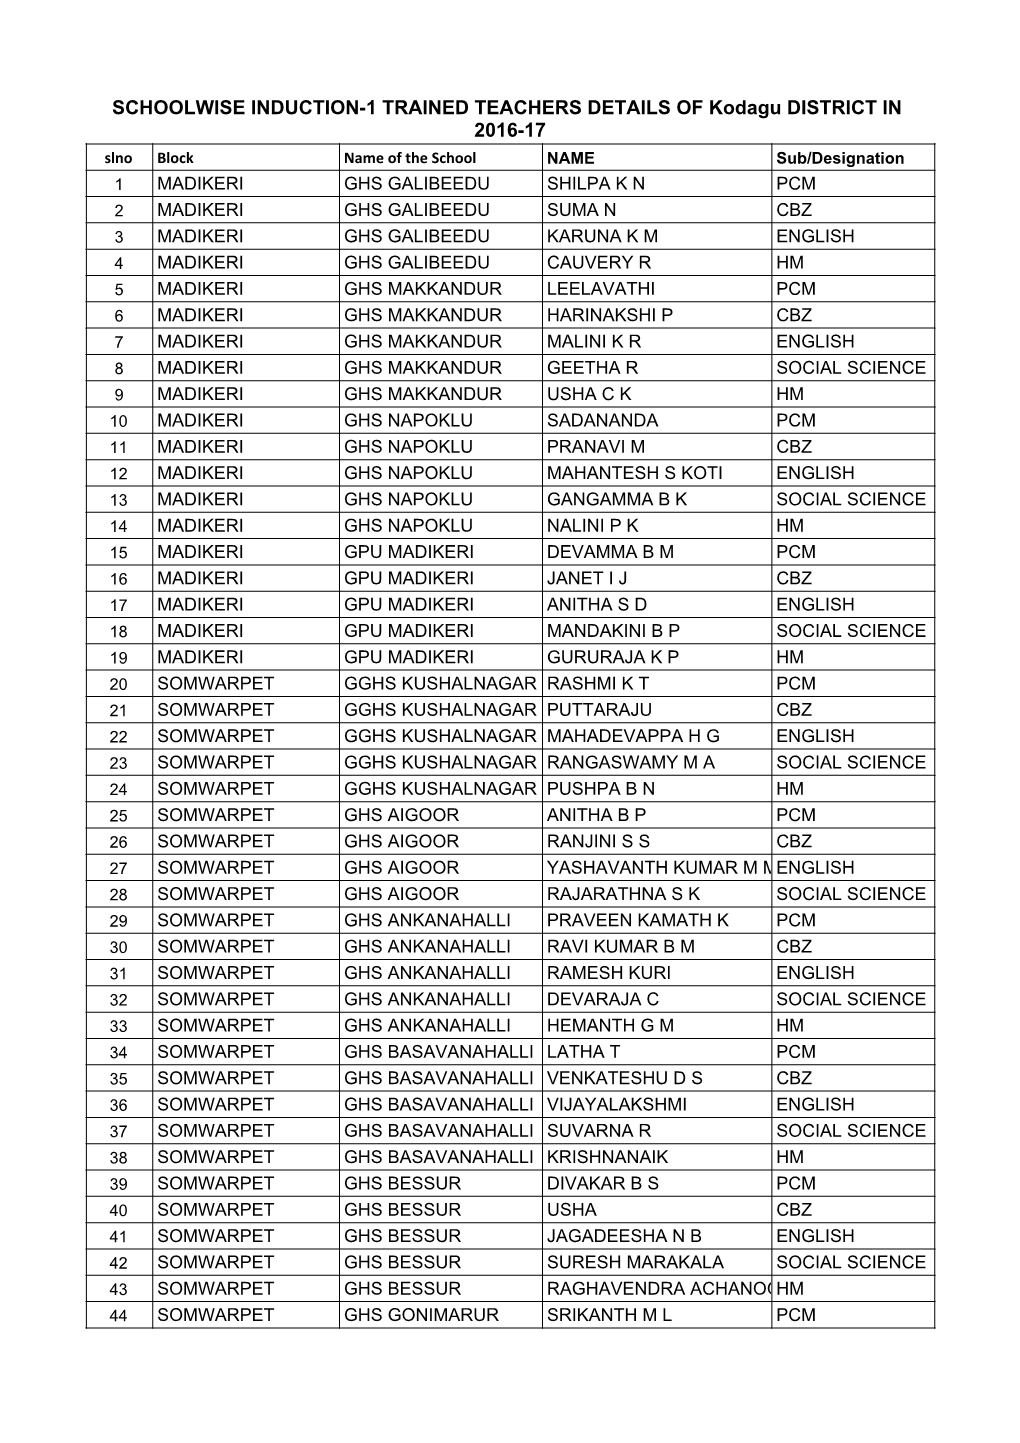 List of Trained Teachers Induction-1 Kodagu